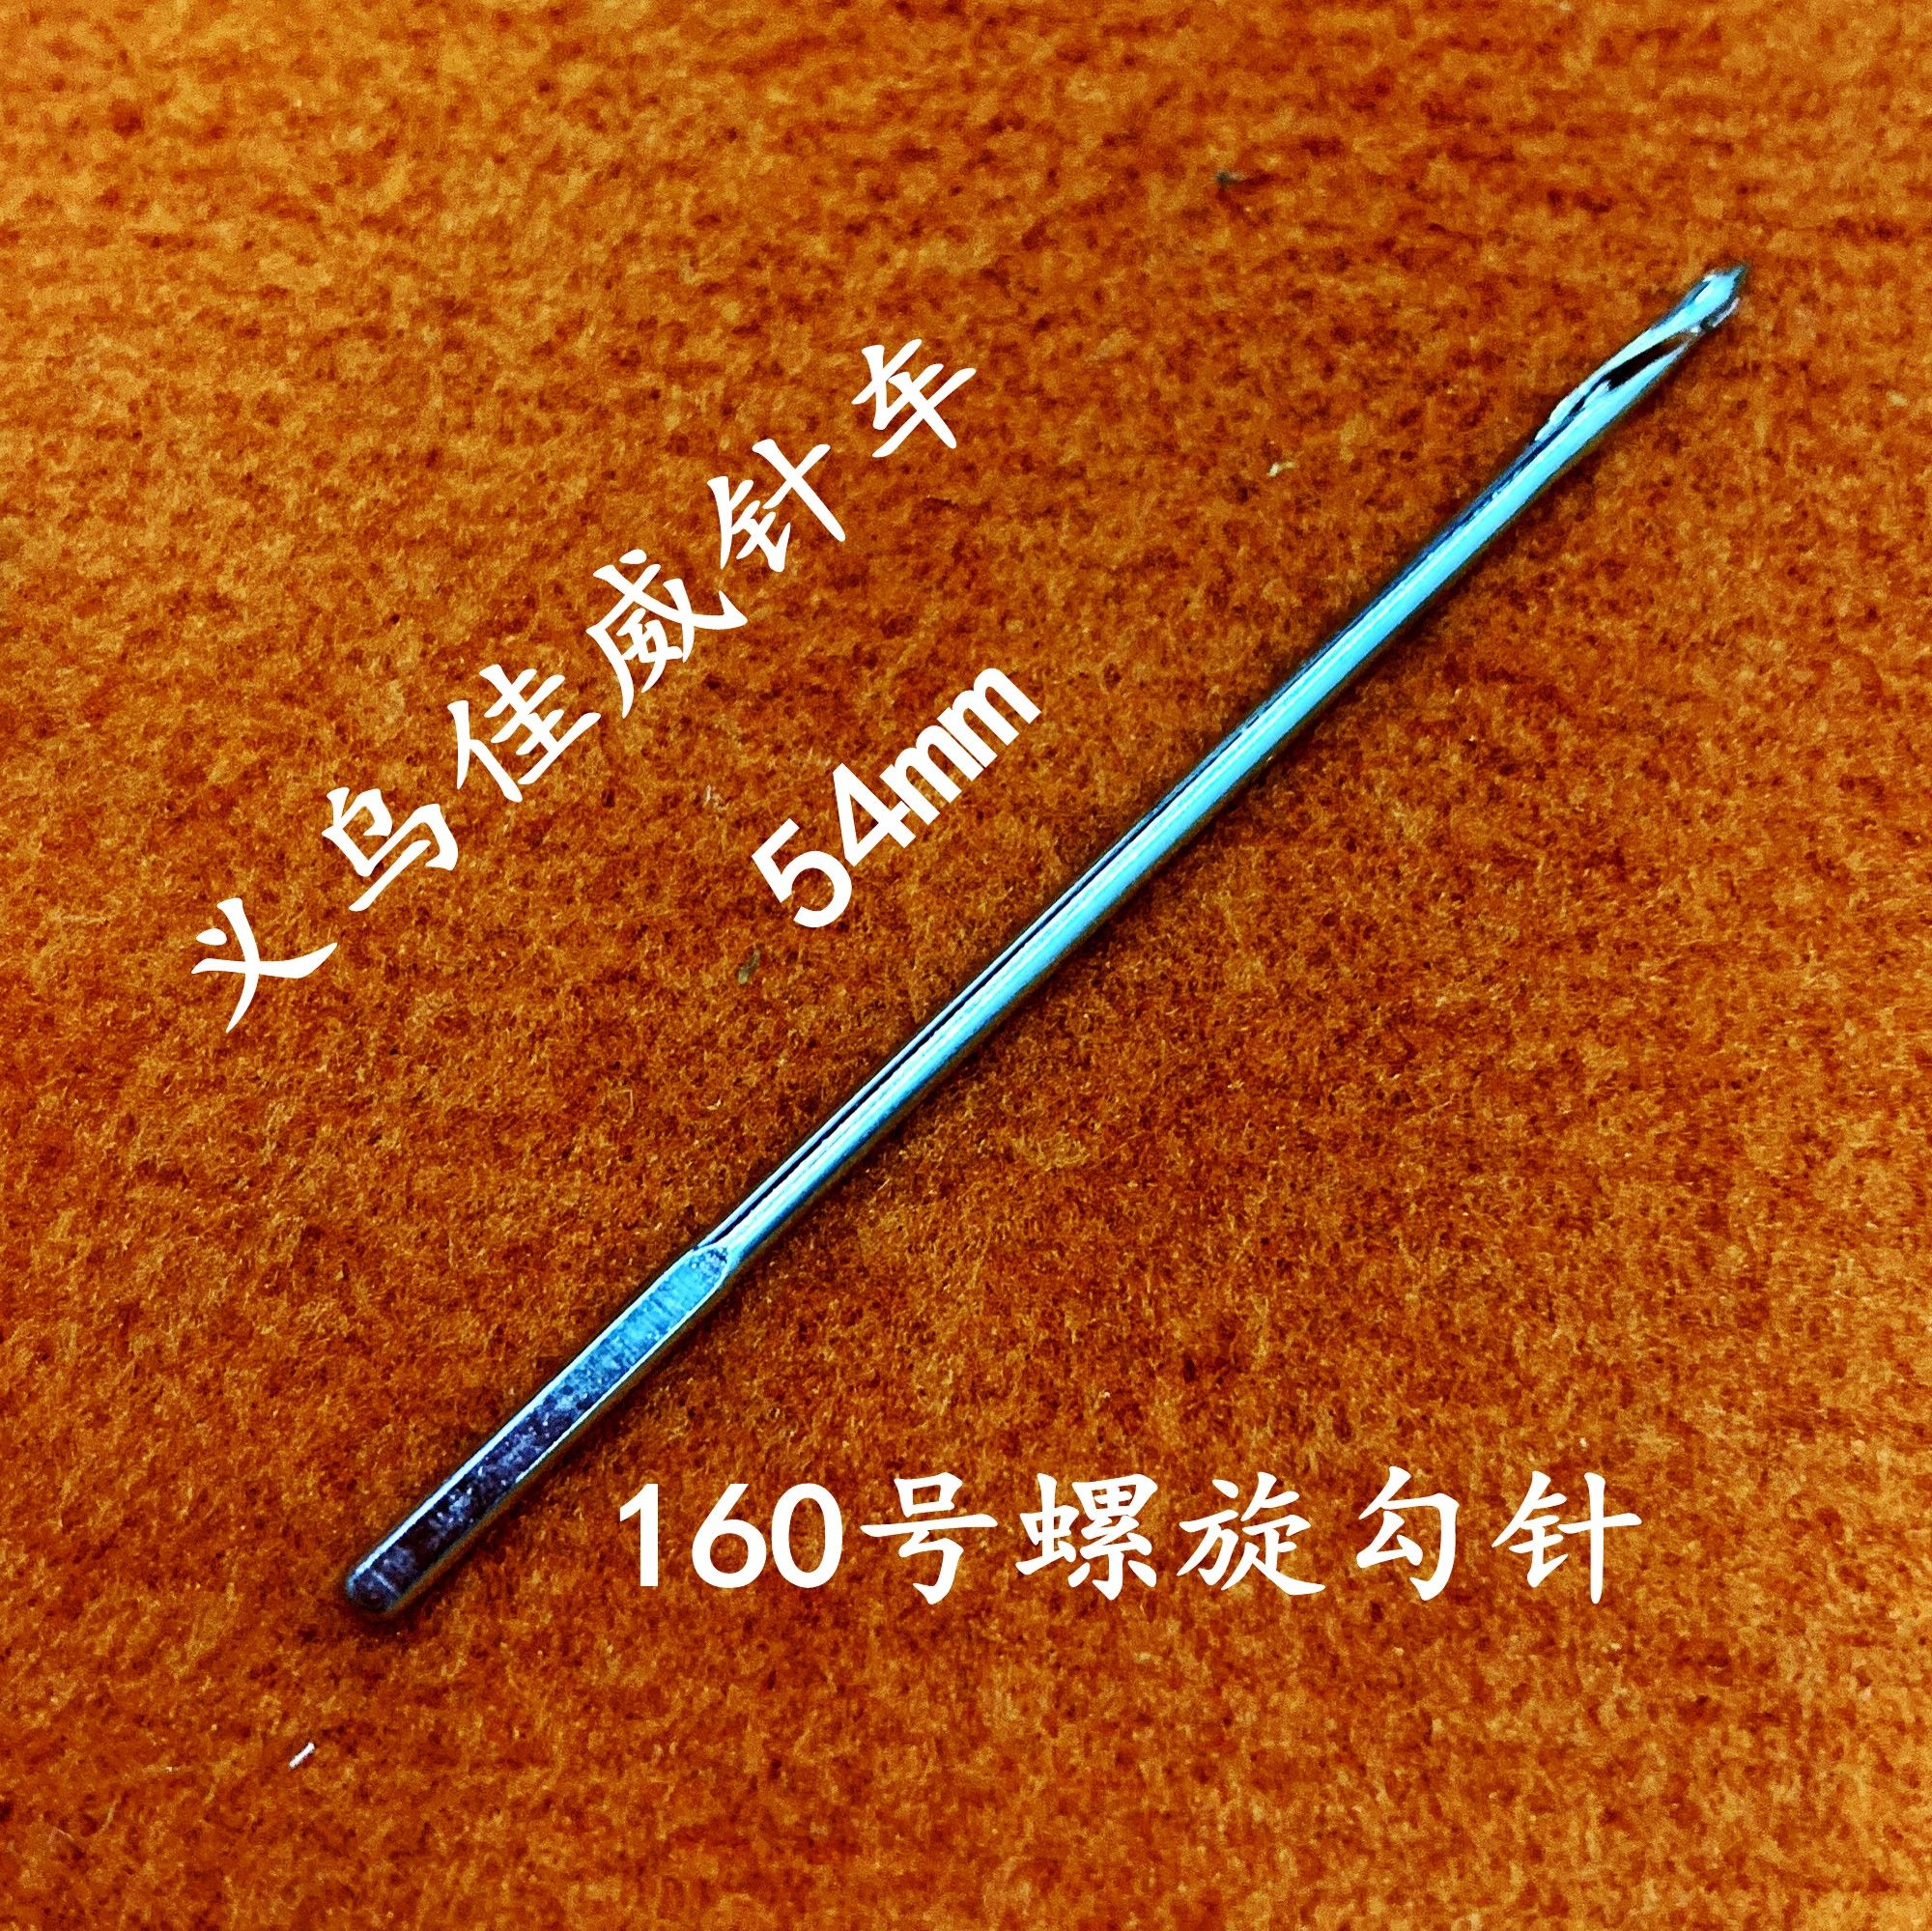 上海蓝箭 装钉机耗材锁线机专业钩针 订书勾针 直针 底针正品直销图